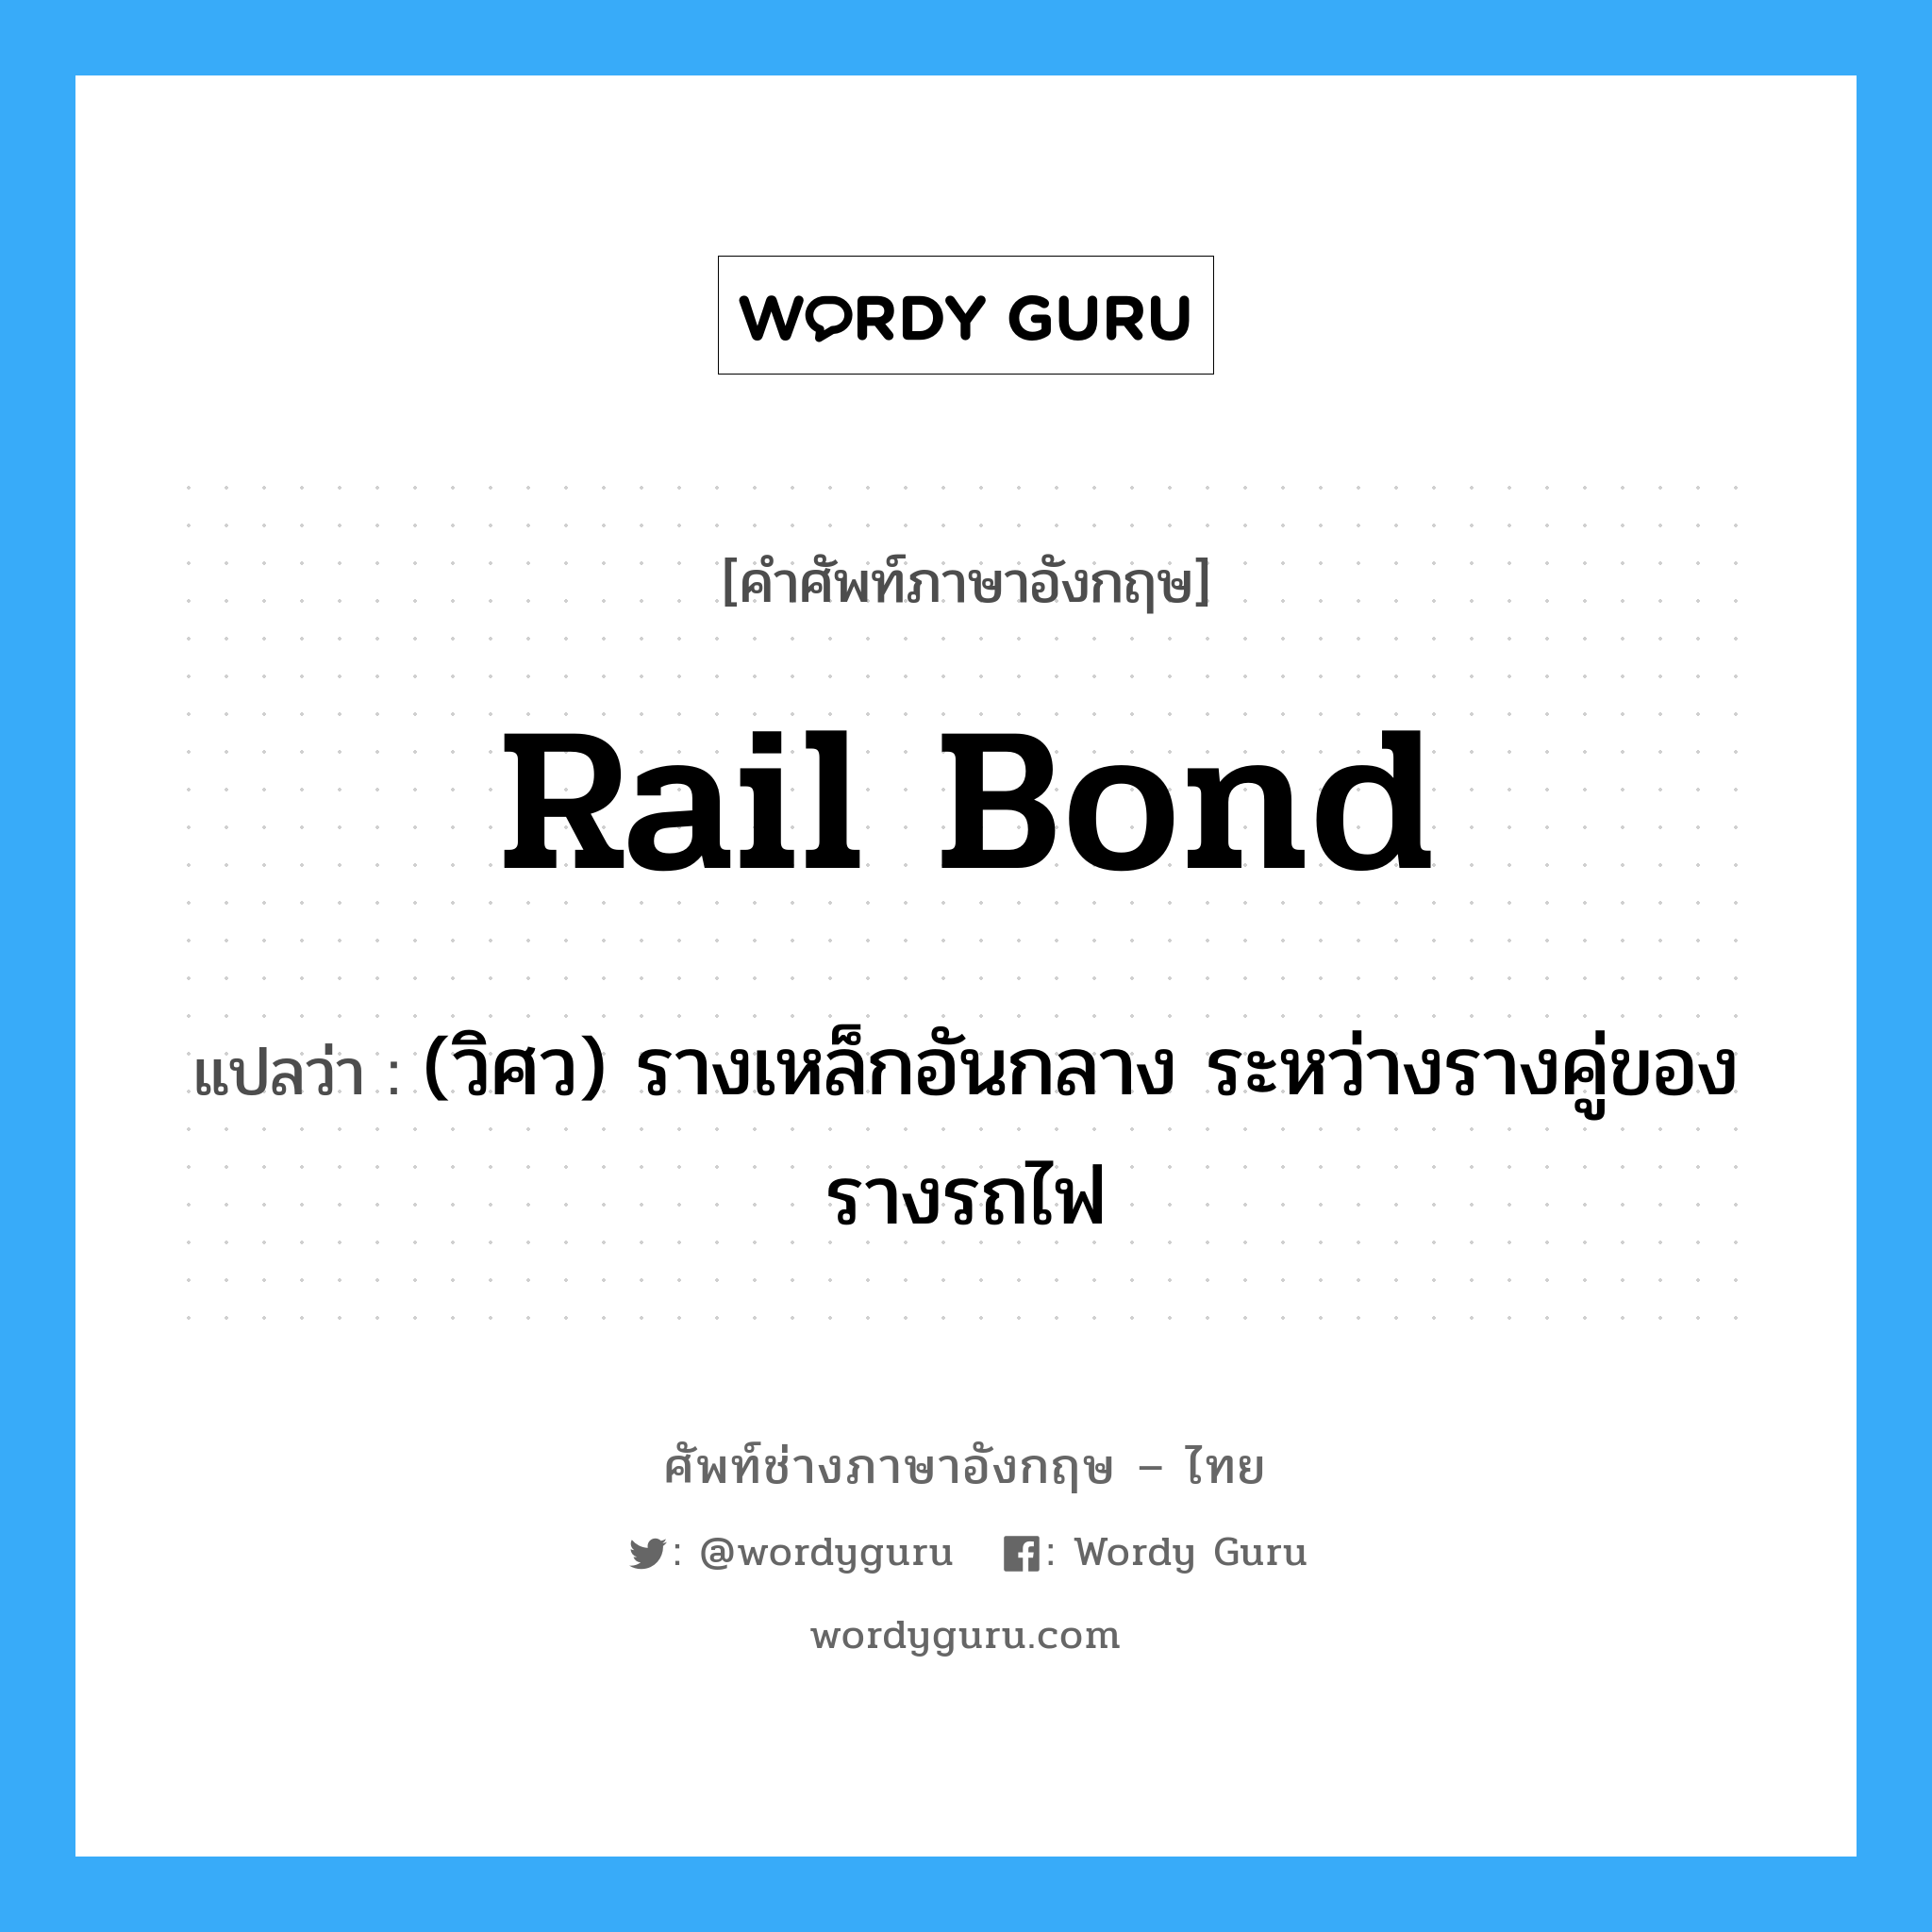 rail bond แปลว่า?, คำศัพท์ช่างภาษาอังกฤษ - ไทย rail bond คำศัพท์ภาษาอังกฤษ rail bond แปลว่า (วิศว) รางเหล็กอันกลาง ระหว่างรางคู่ของรางรถไฟ